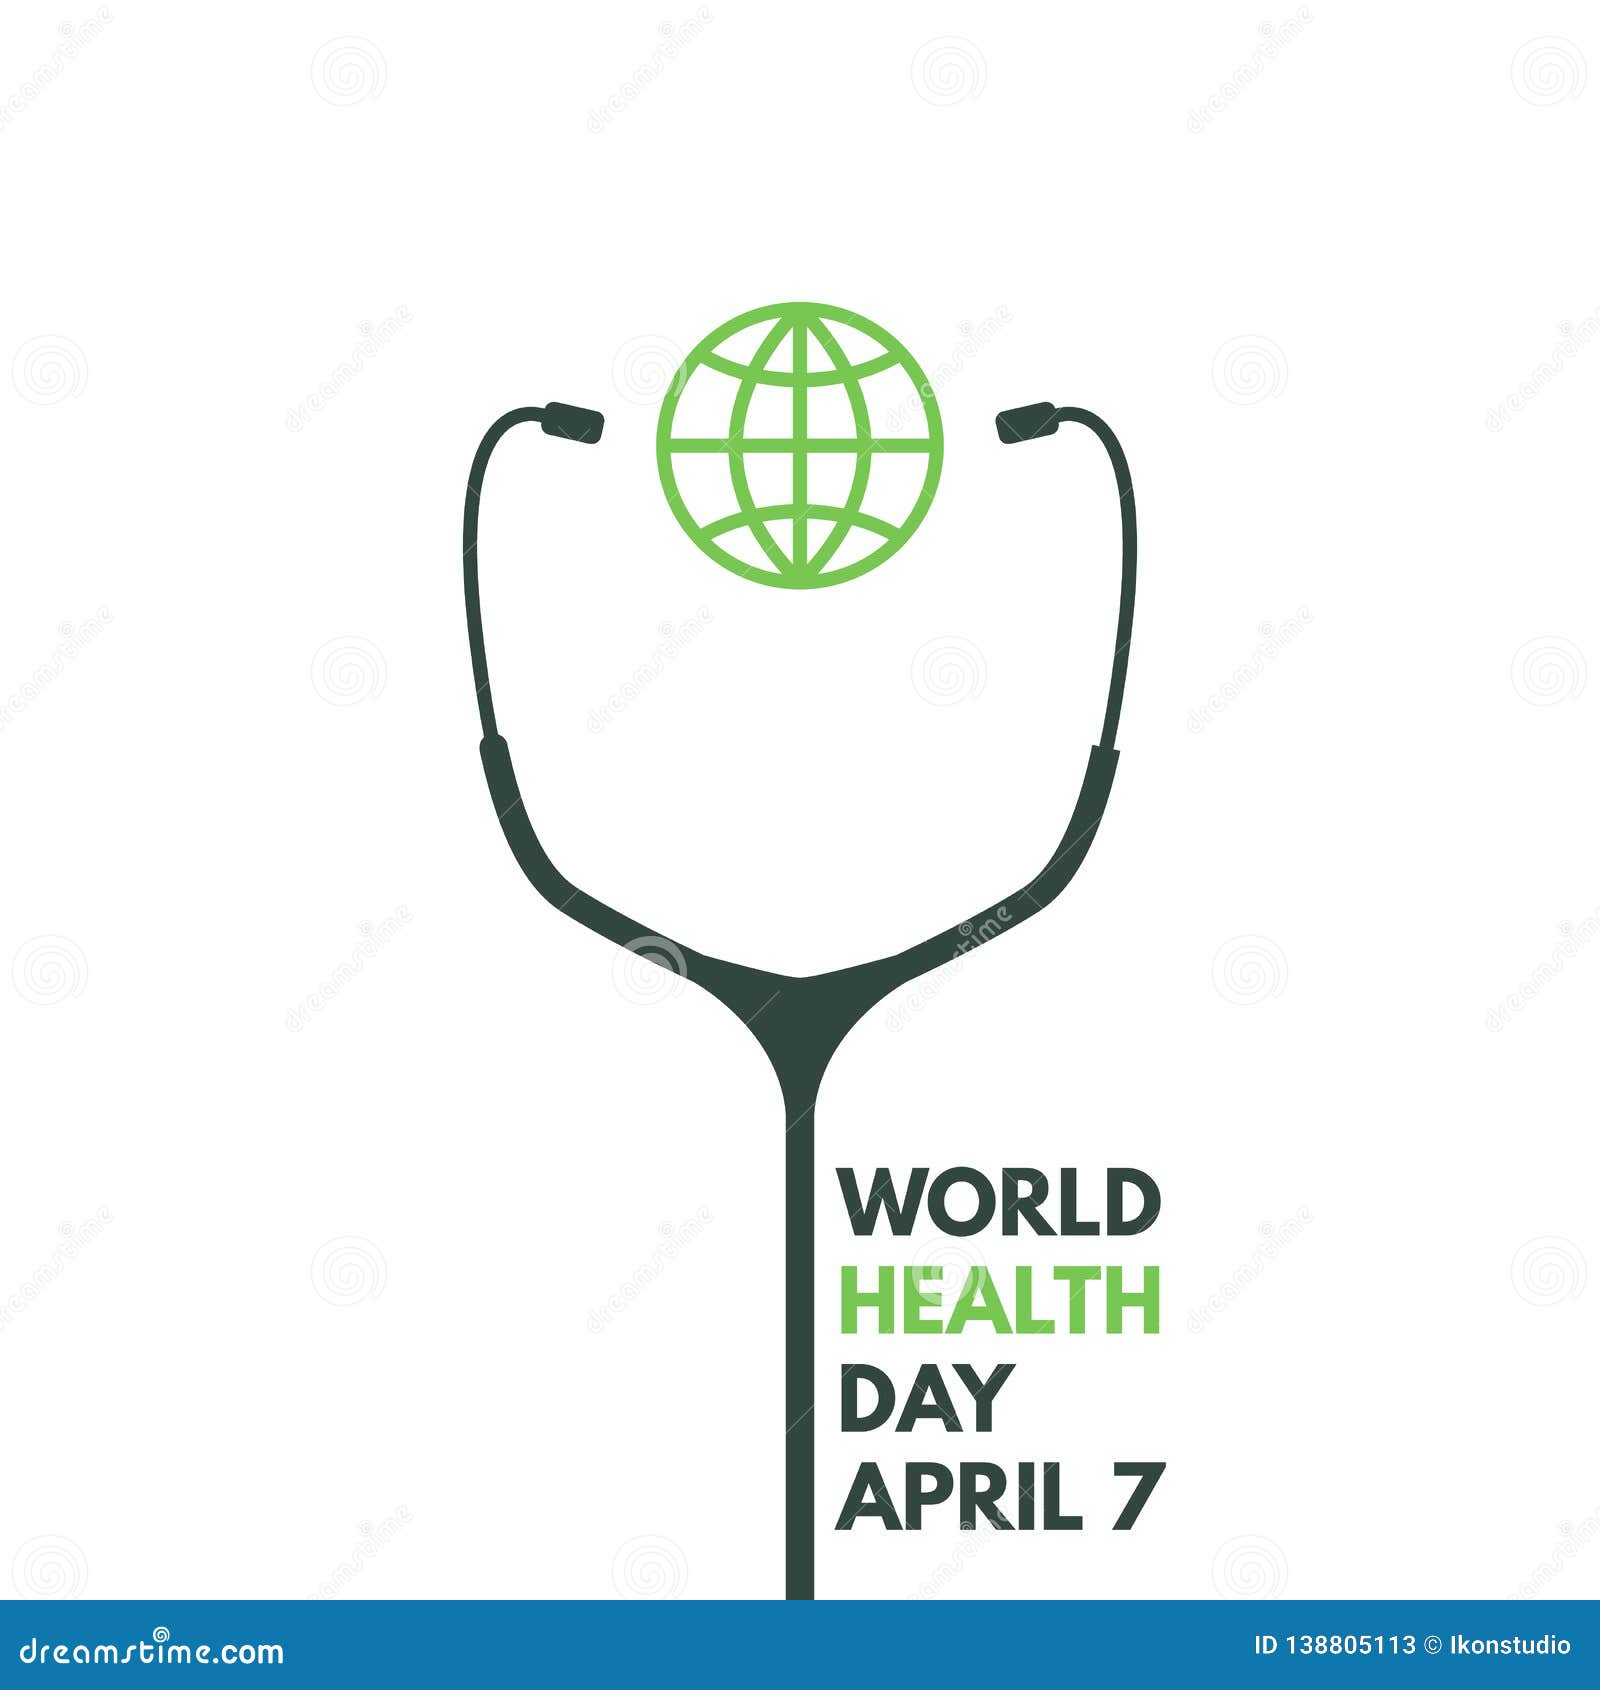 Всемирный день здоровья плакат. День здоровья Минимализм. Всемирный день здоровья. Всемирный день здоровья Минимализм. Логотип здоровье Минимализм.